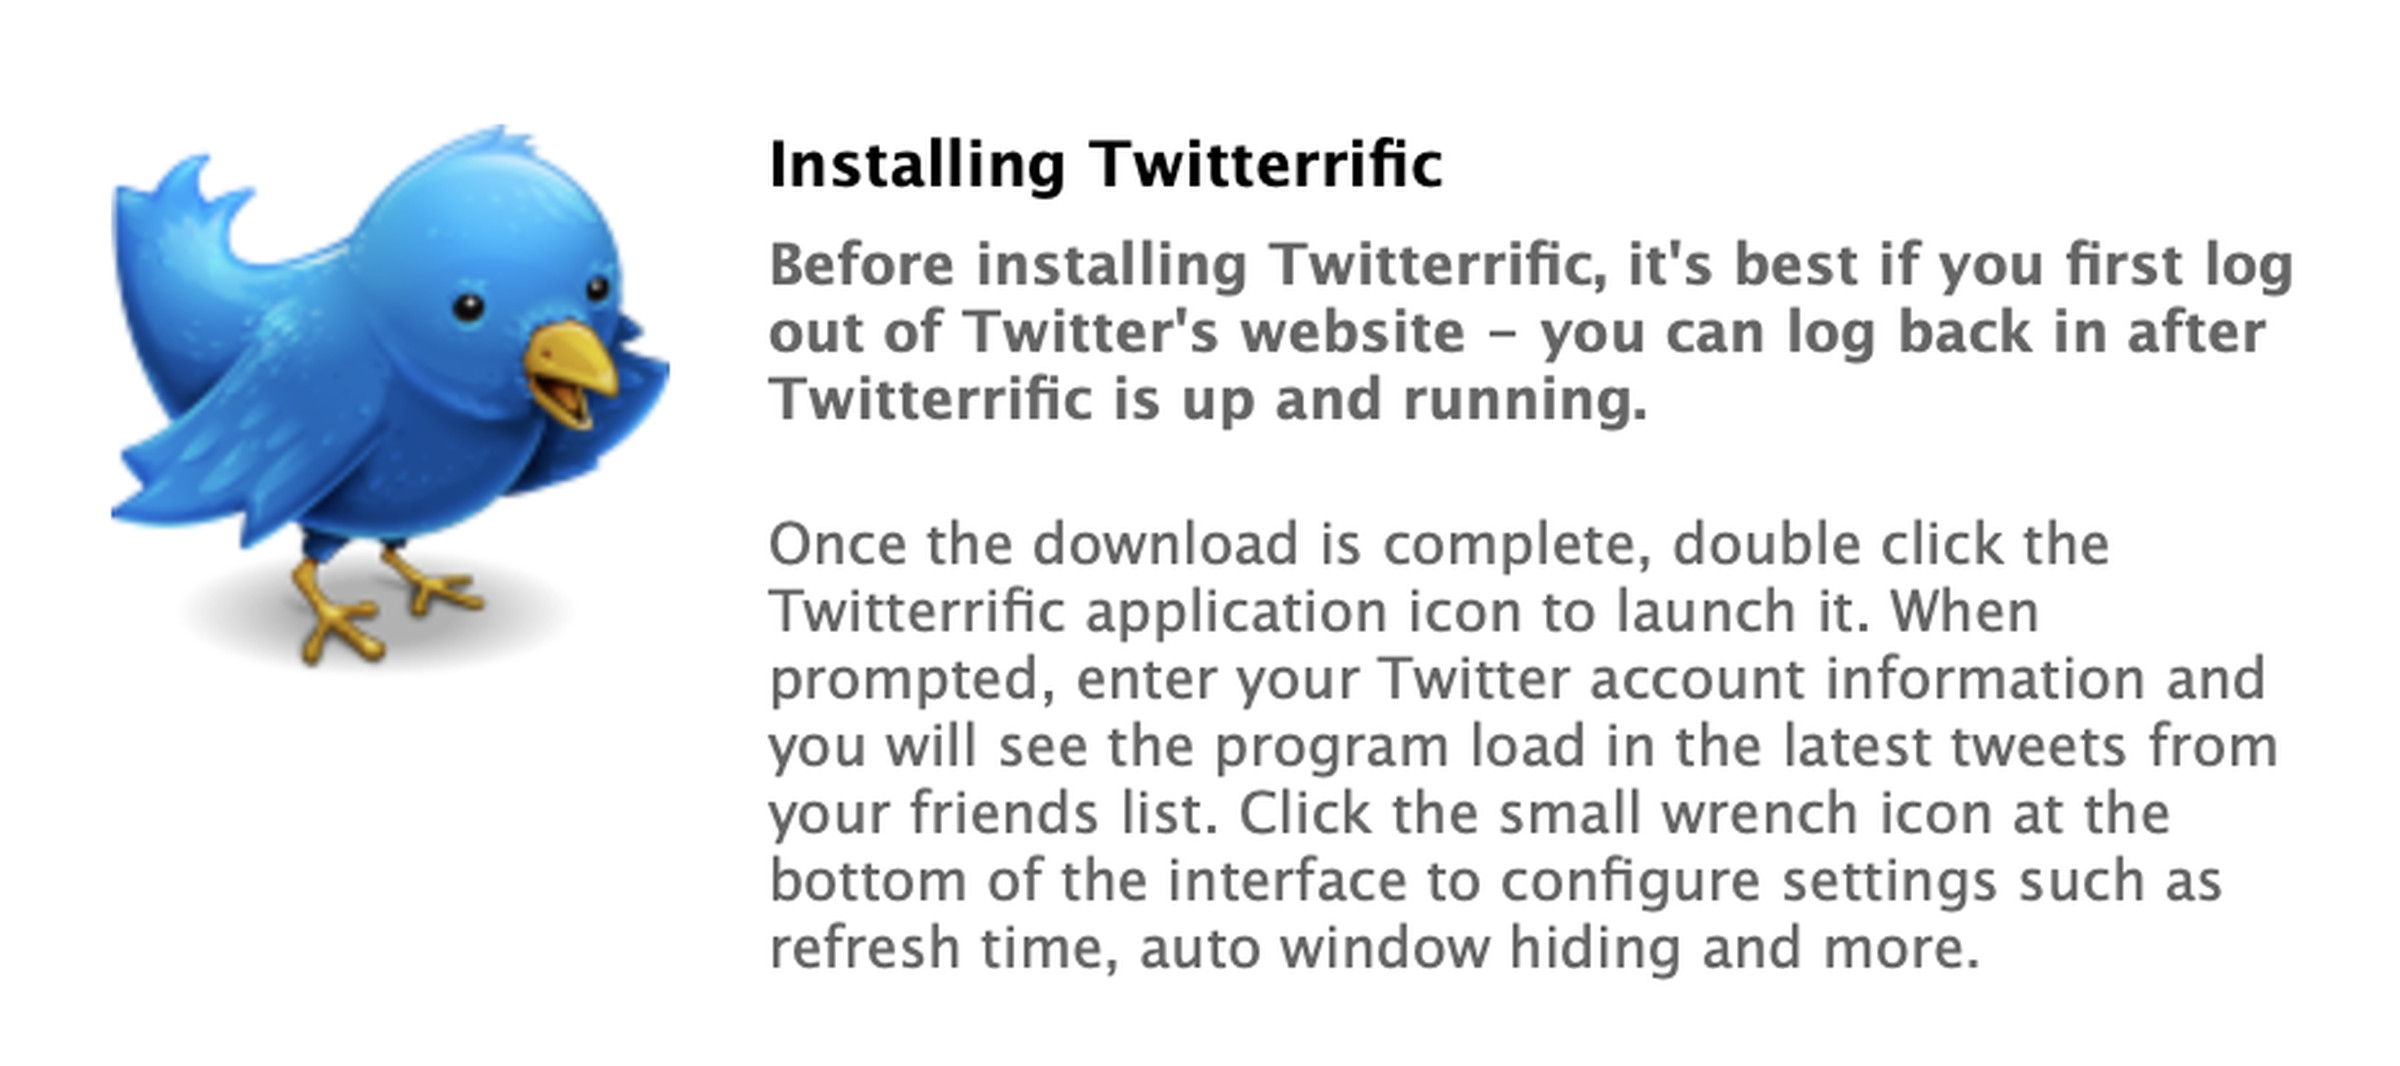 A screenshot of the Twitterific bird logo from 2007.